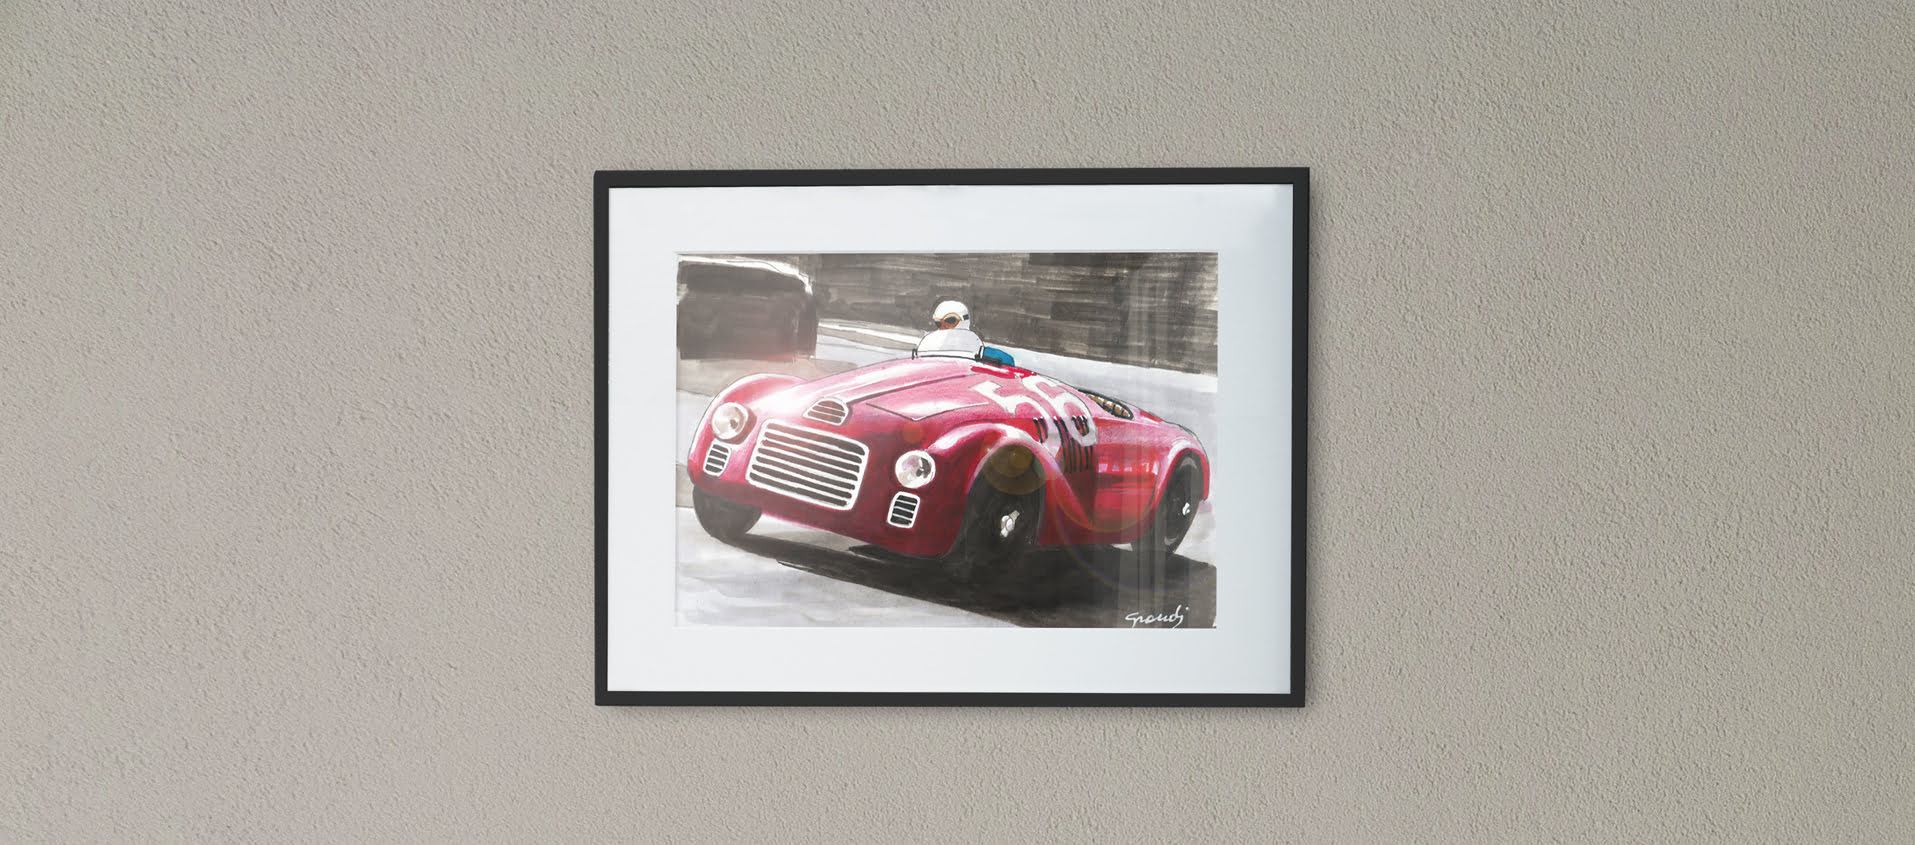 1947. Ferrari. At last! image